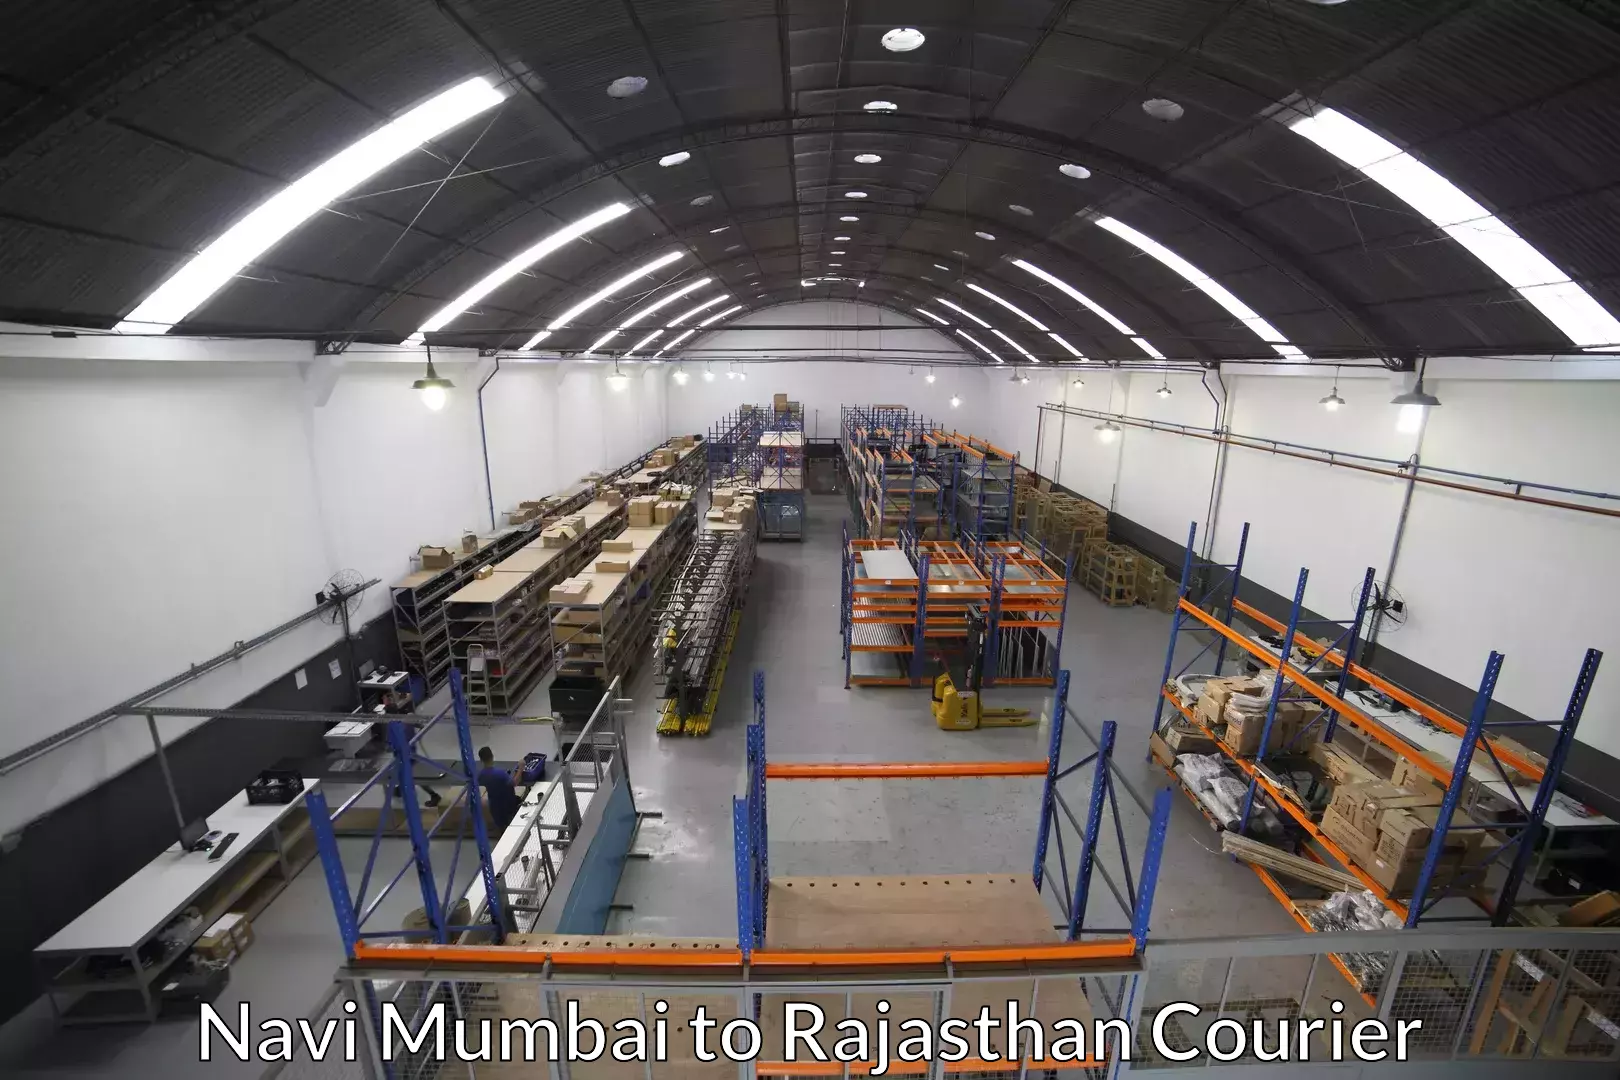 Furniture transport specialists Navi Mumbai to Tonk